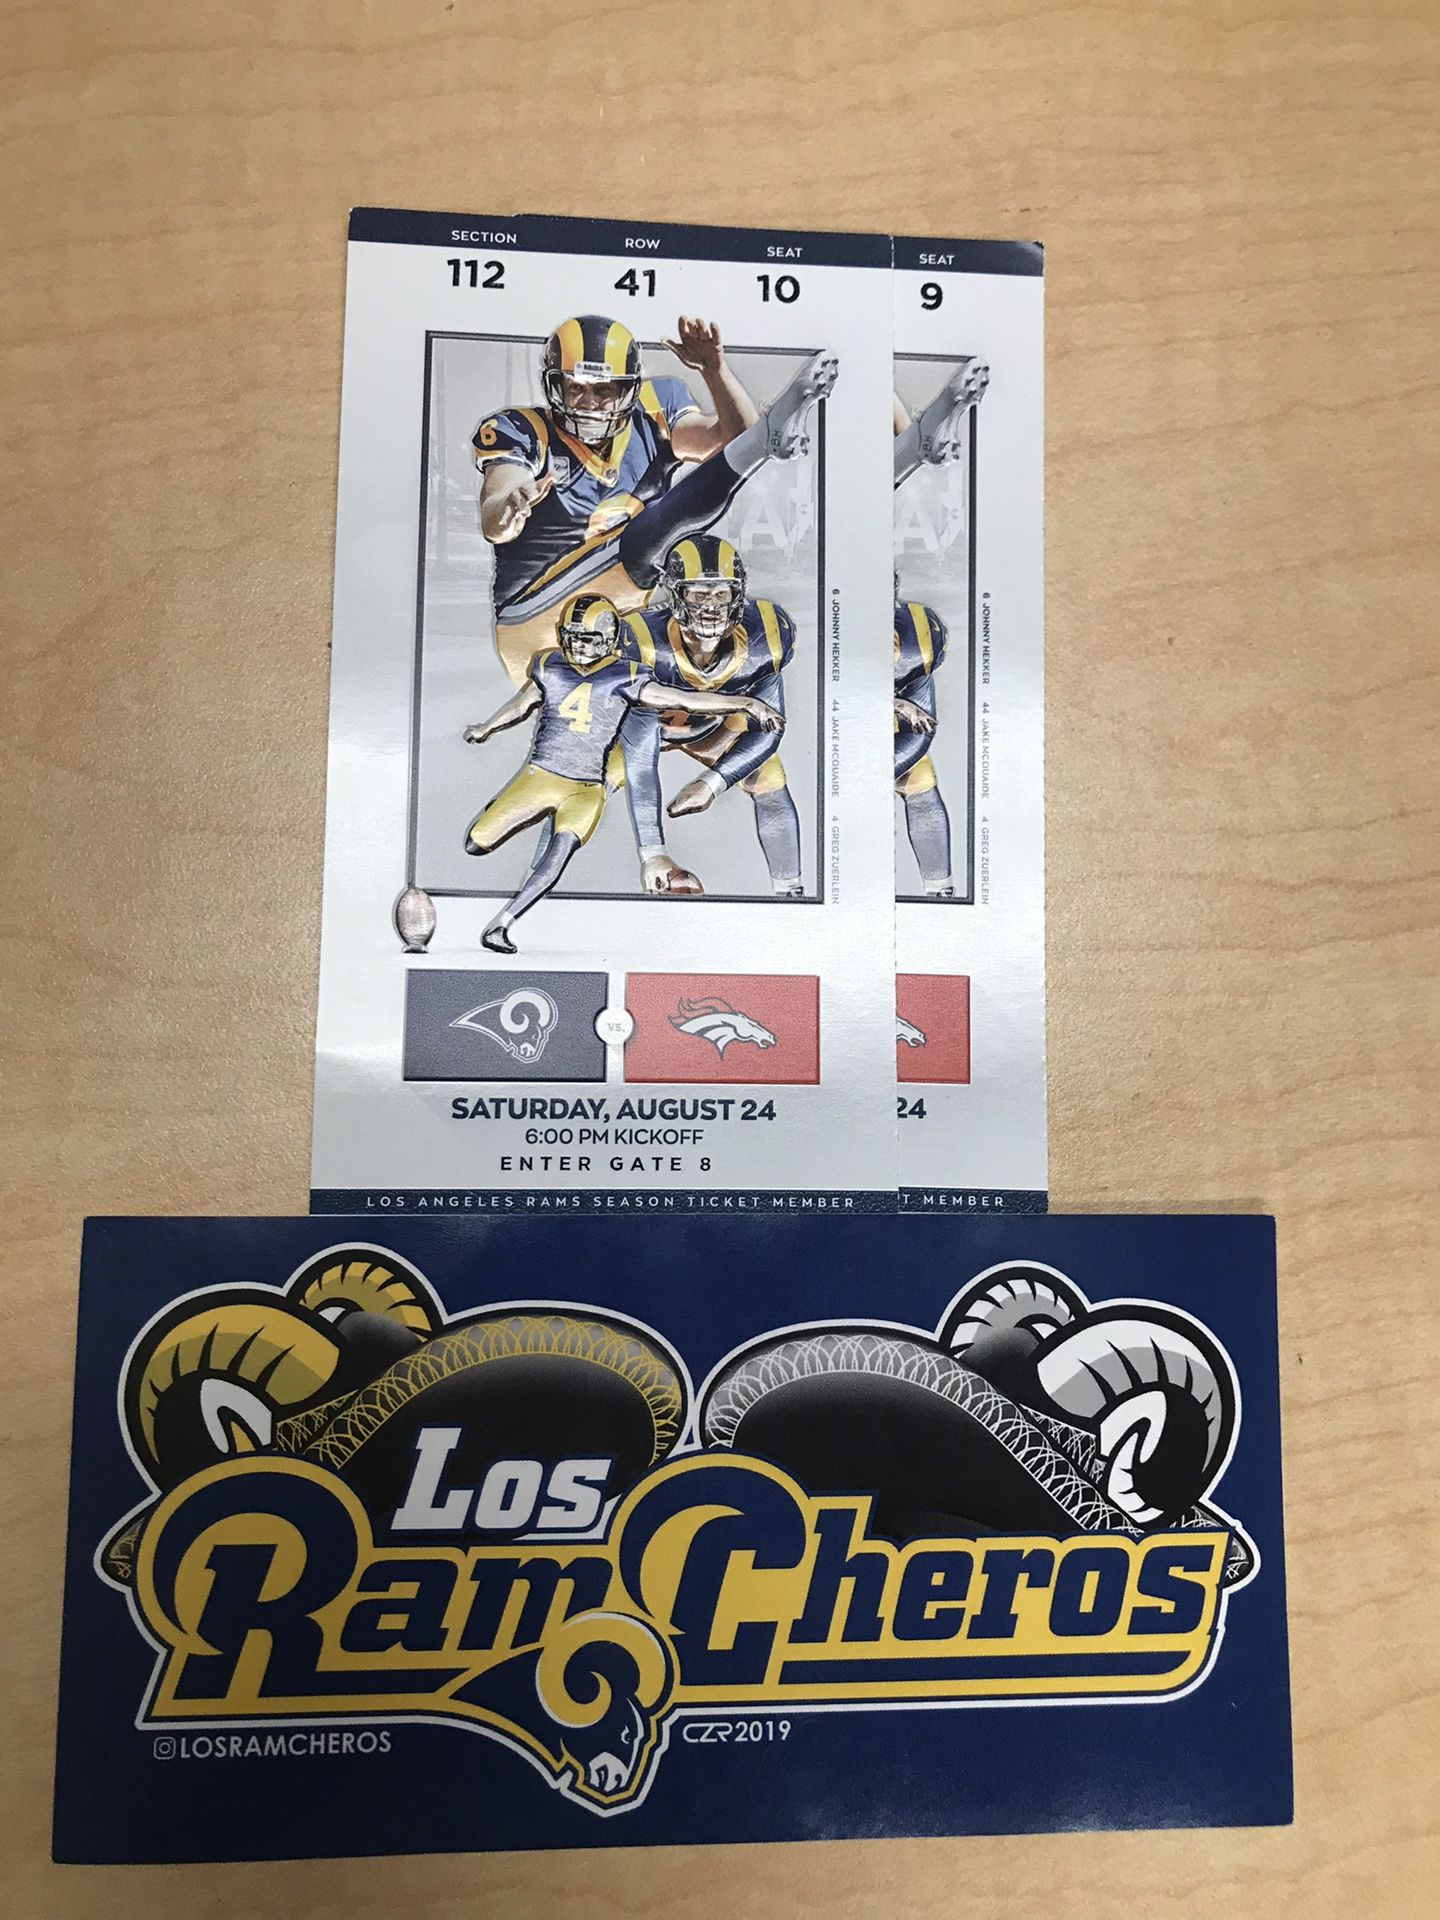 LA Rams tickets Saturday game 8/24/19